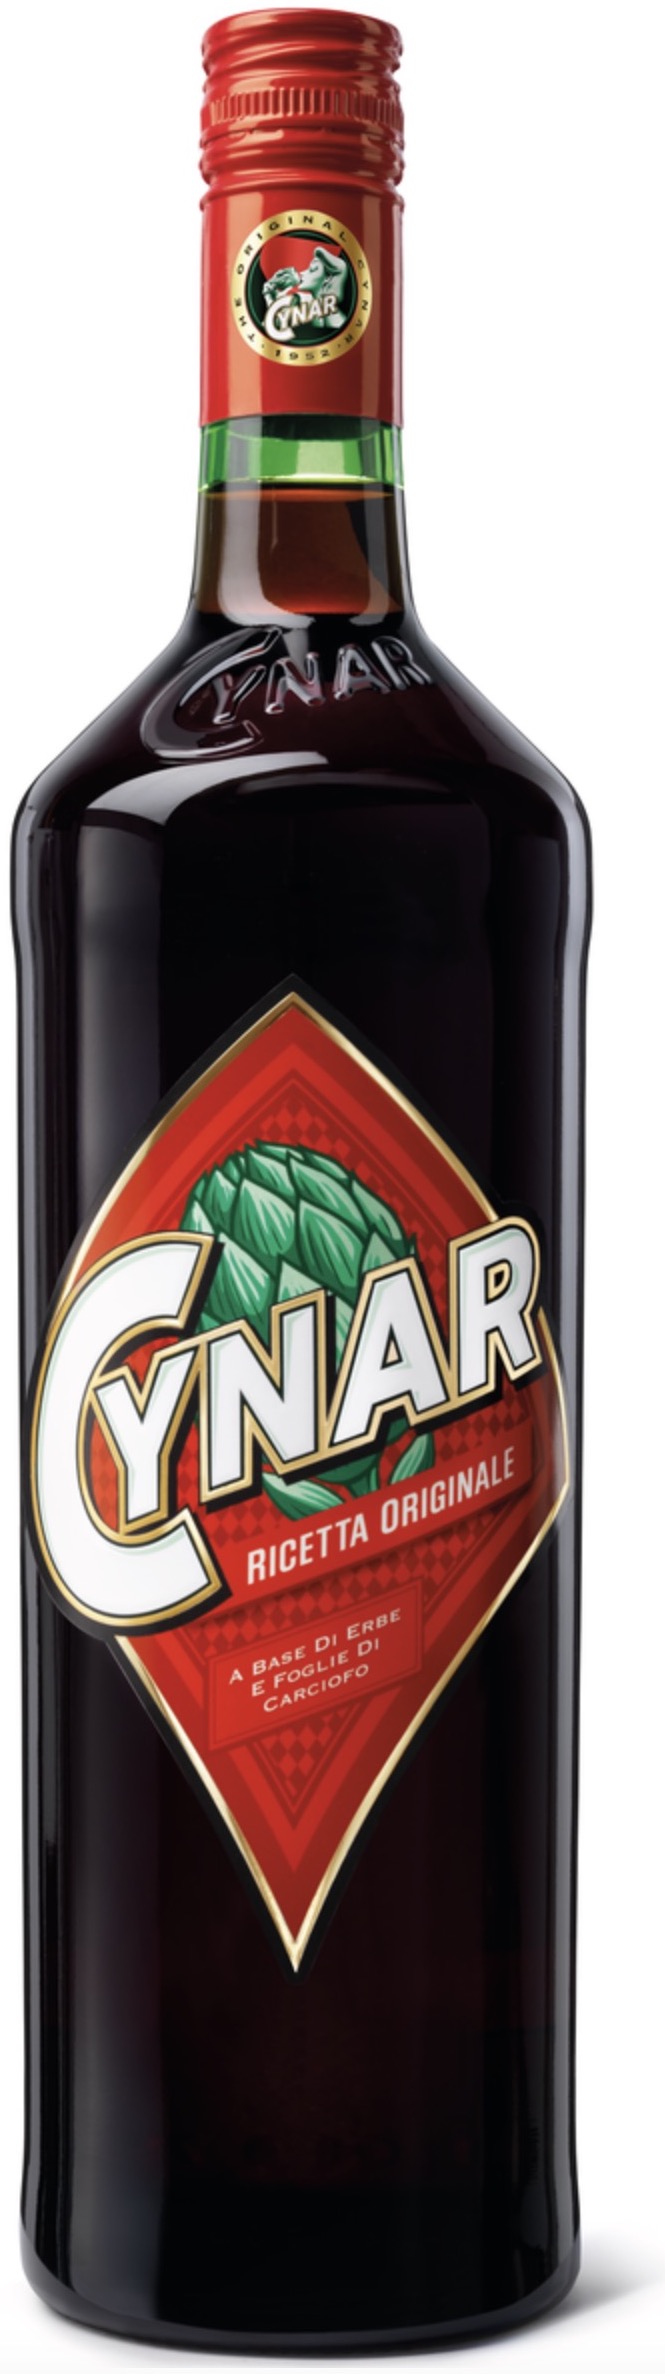 Cynar Italienischer Kräuterlikör 16,5% vol. 0,7L